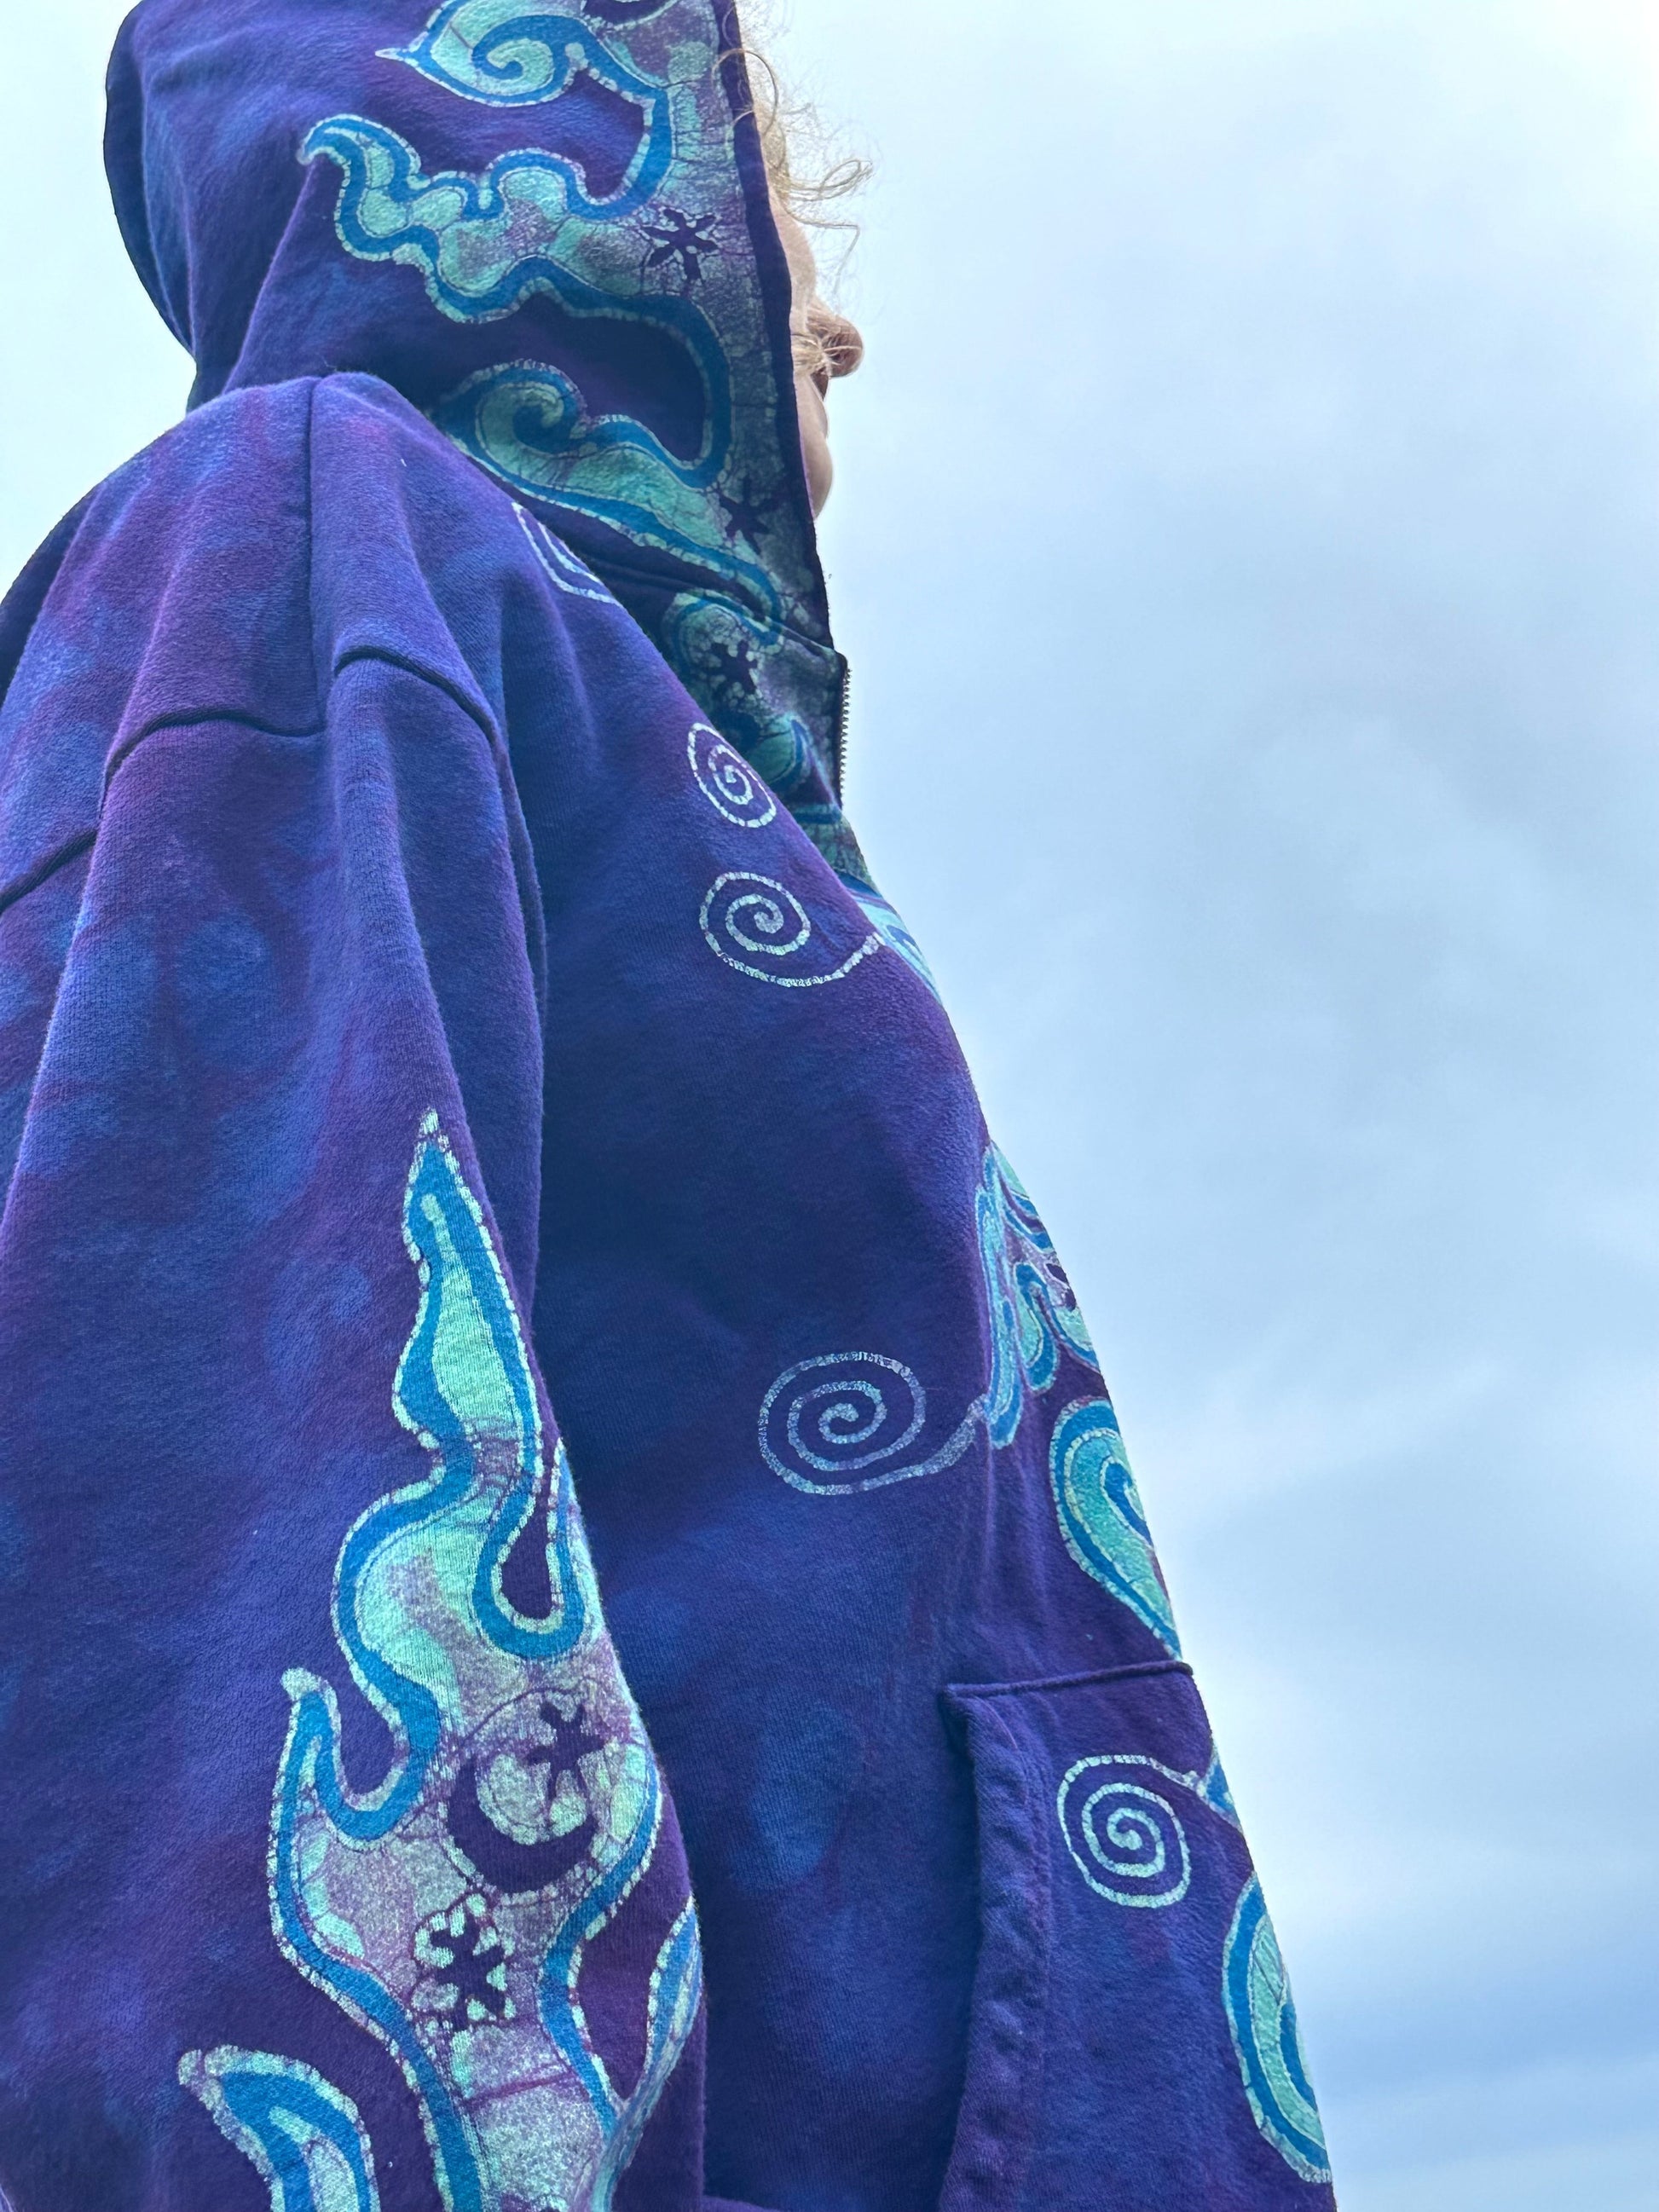 Swell Swirls in Purple Waves Handcrafted Batik Zipper Hoodie - Unisex Size XL hoodie batikwalla 